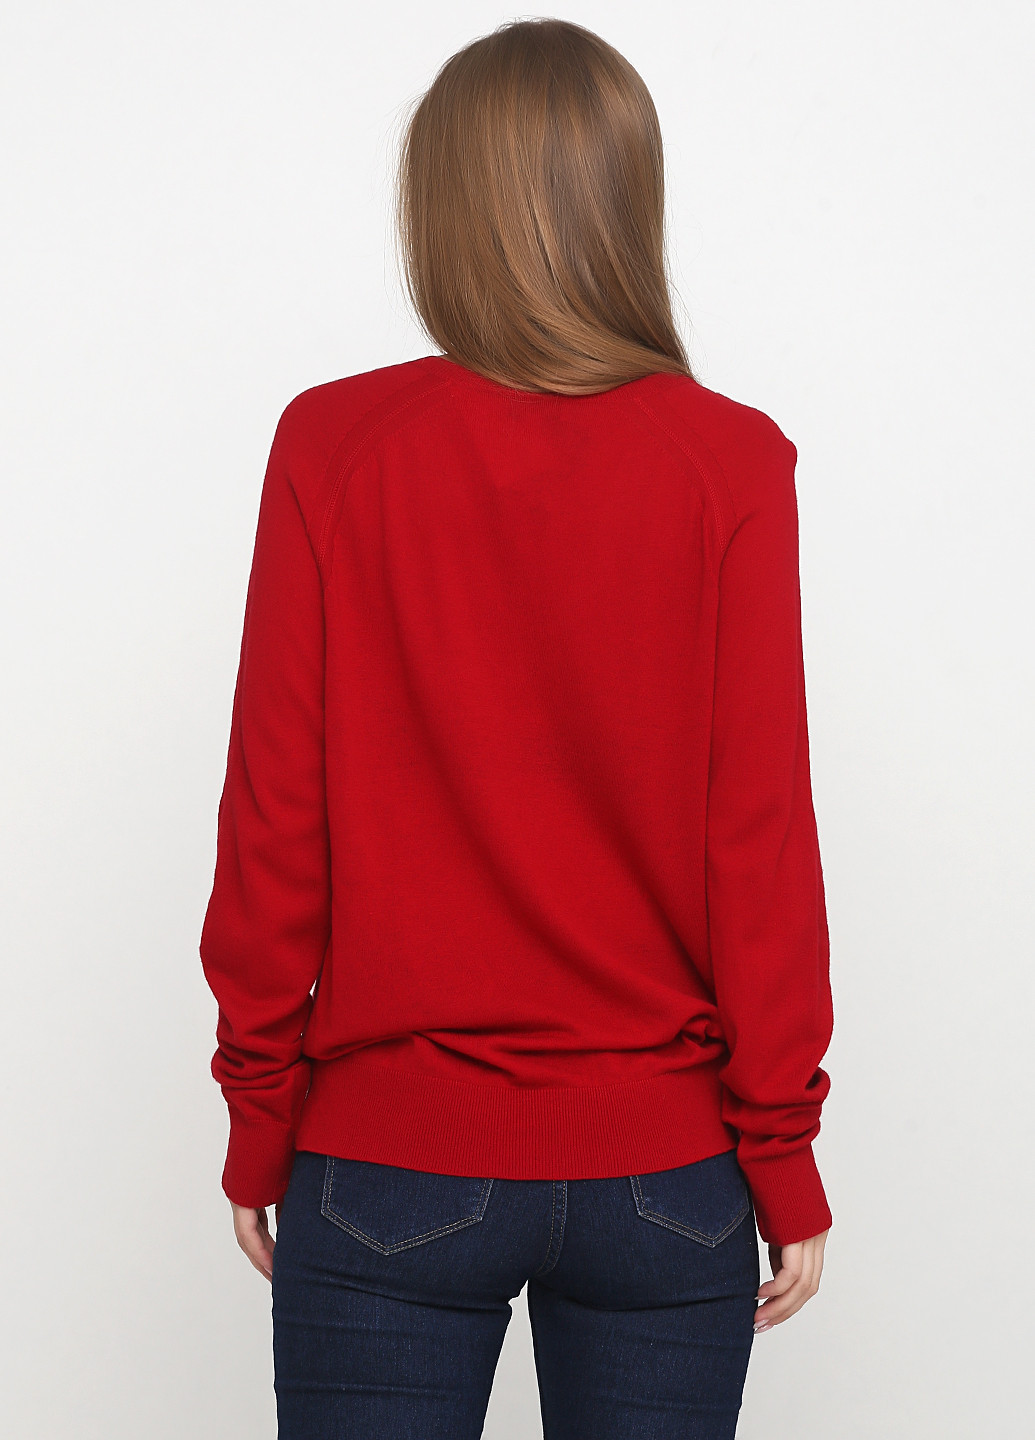 Красный демисезонный пуловер пуловер Paul & Joe